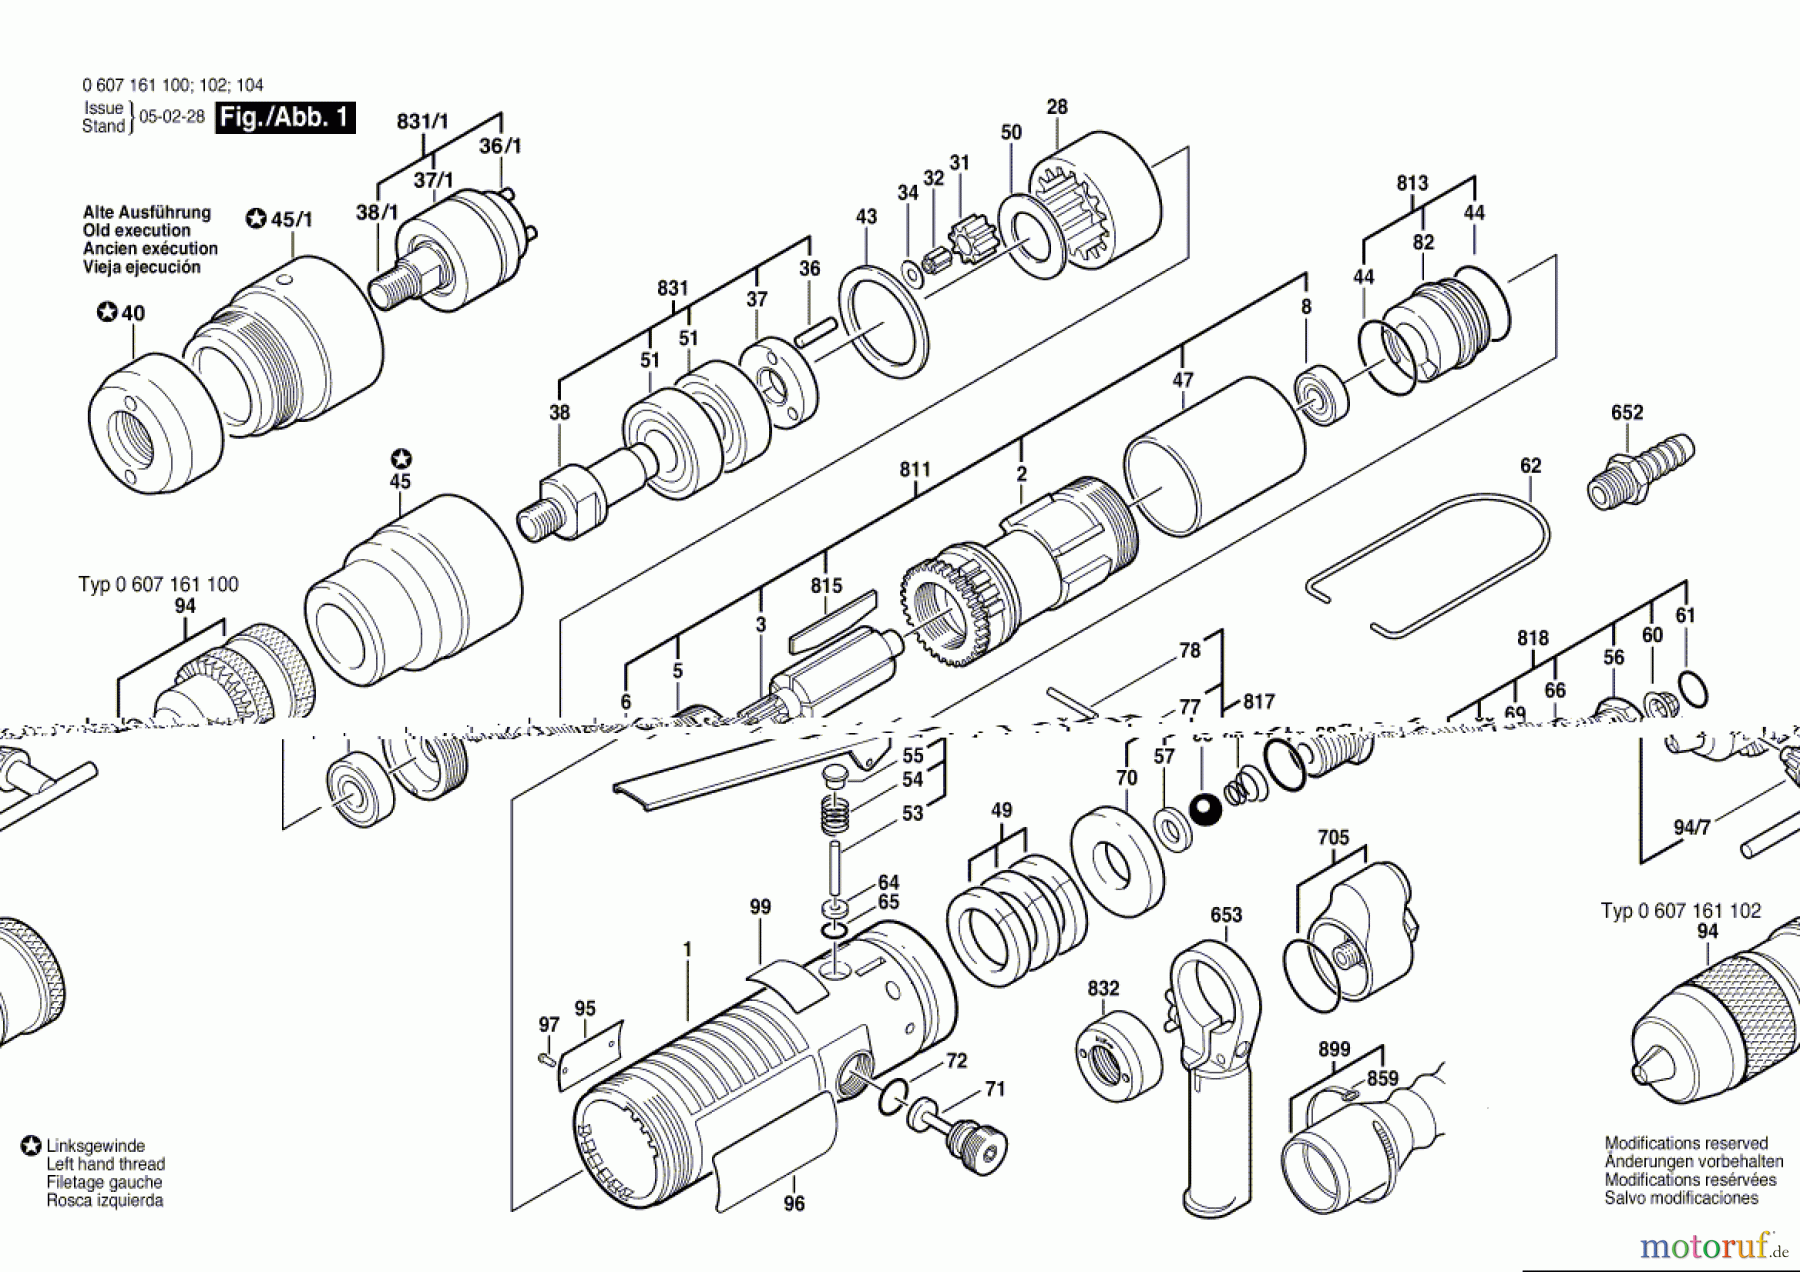  Bosch Werkzeug Pw-Bohrmaschine-Ind 400 WATT-SERIE Seite 1